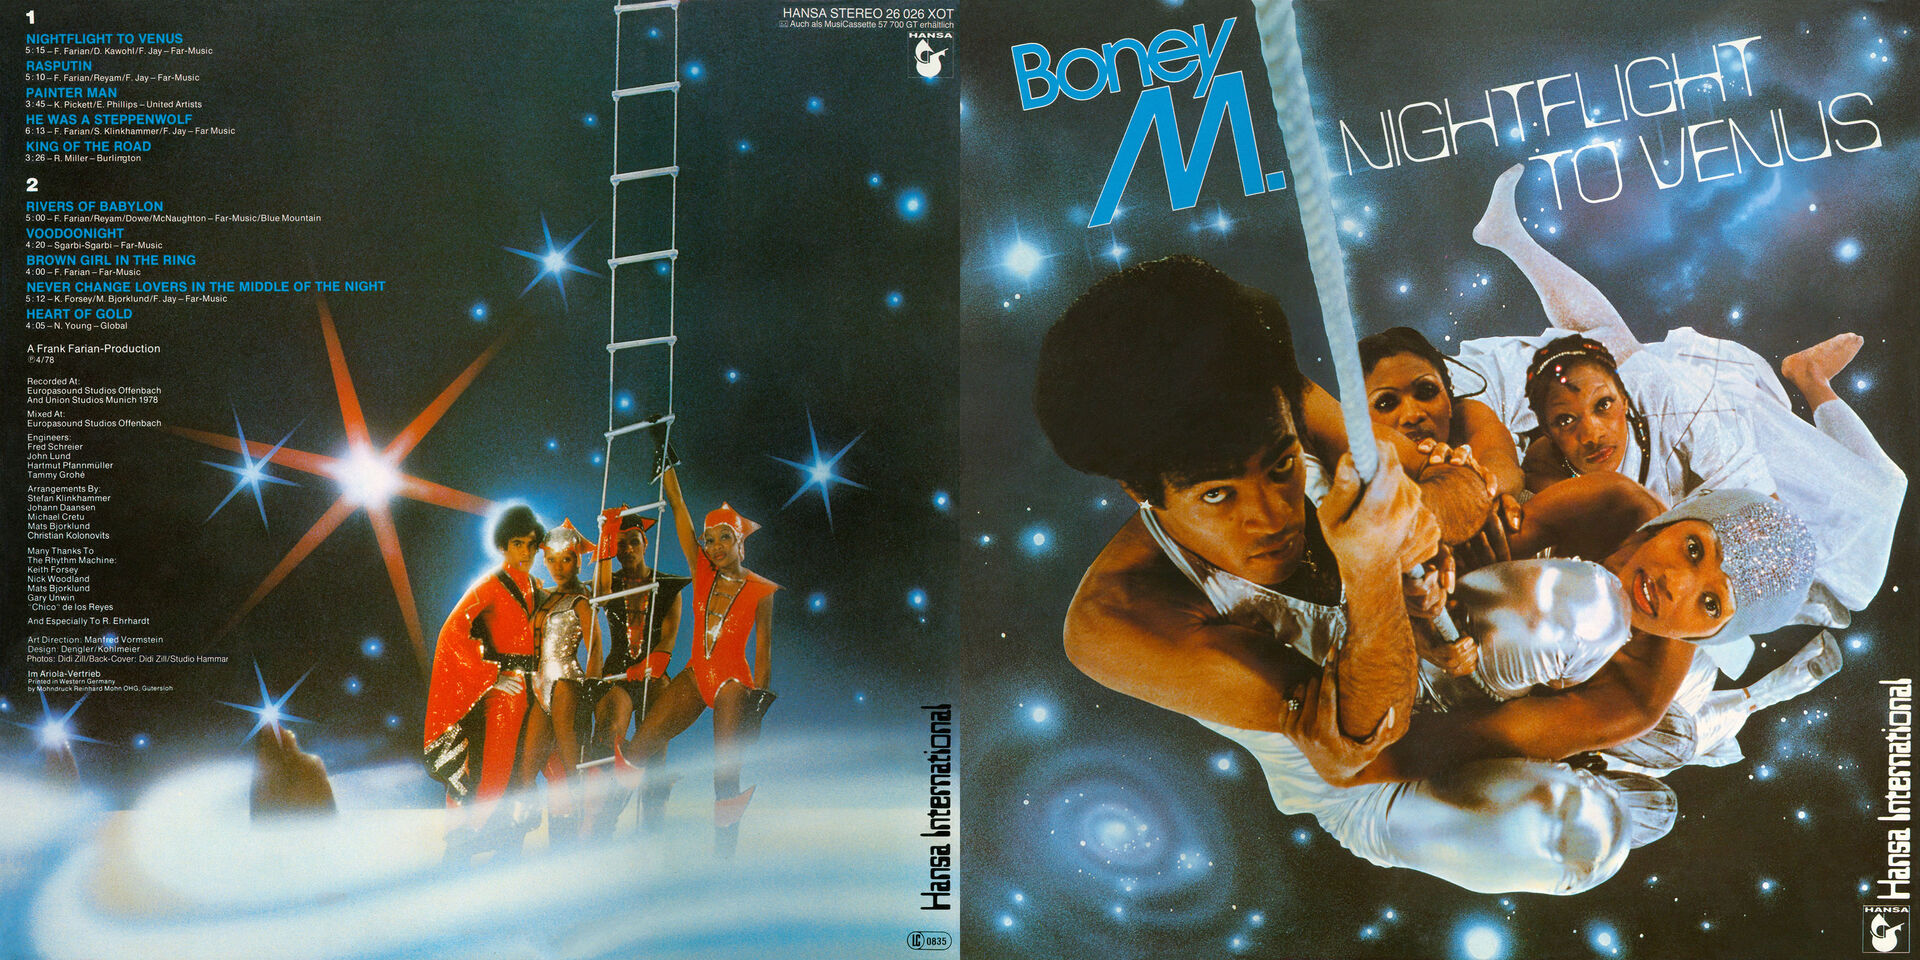 Альбом ночь песни. Группа Boney m. 1978. Boney m Nightflight to Venus 1978 альбом. Бони м 1978 альбом года. Обложки пластинок Boney m.